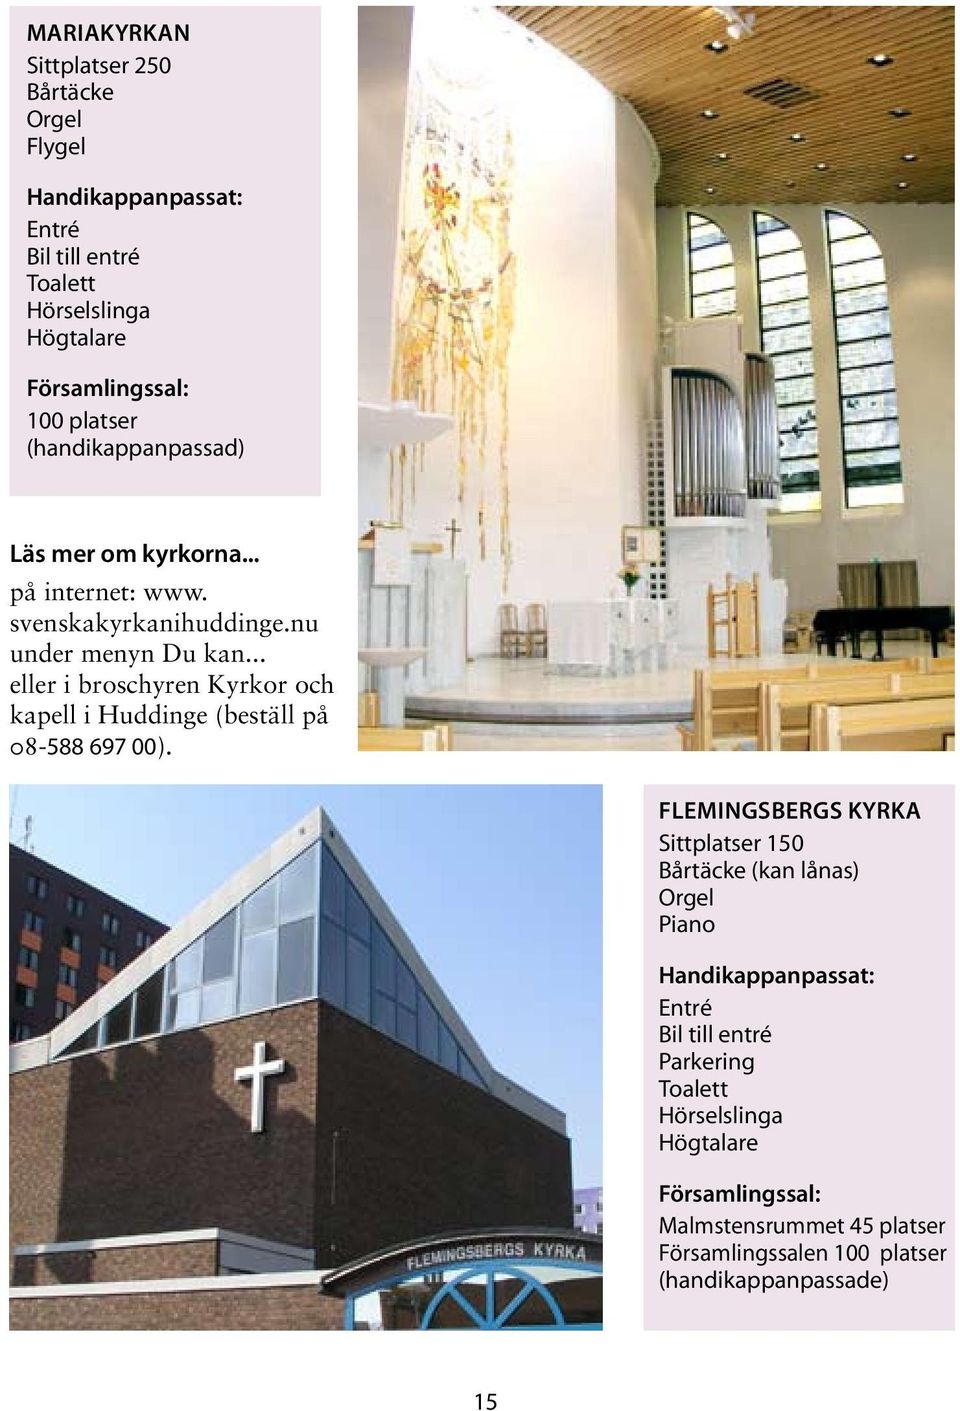 .. eller i broschyren Kyrkor och kapell i Huddinge (beställ på 08-588 697 00).